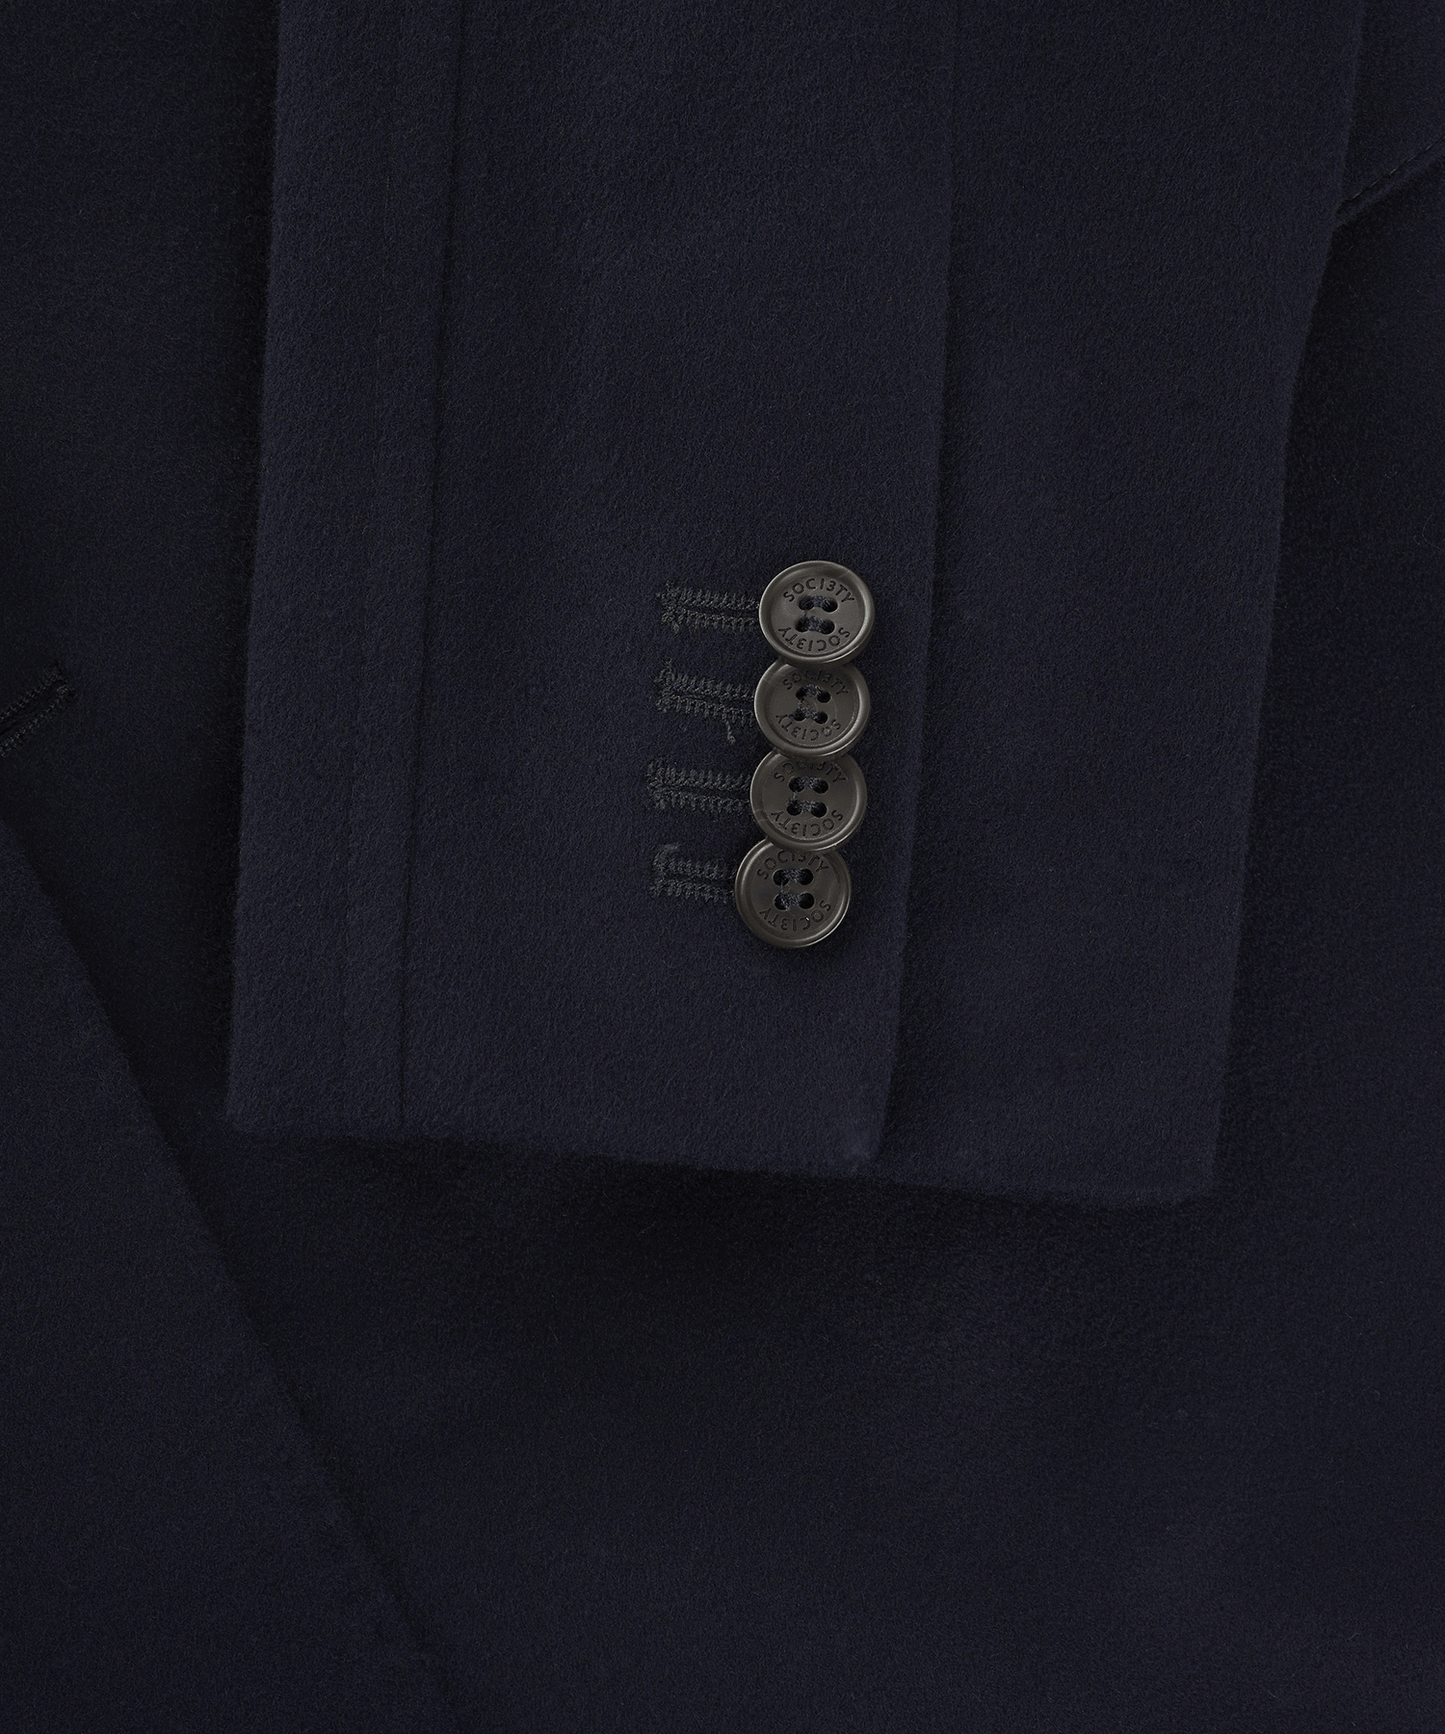 The Coat by Loro Piana navy wol